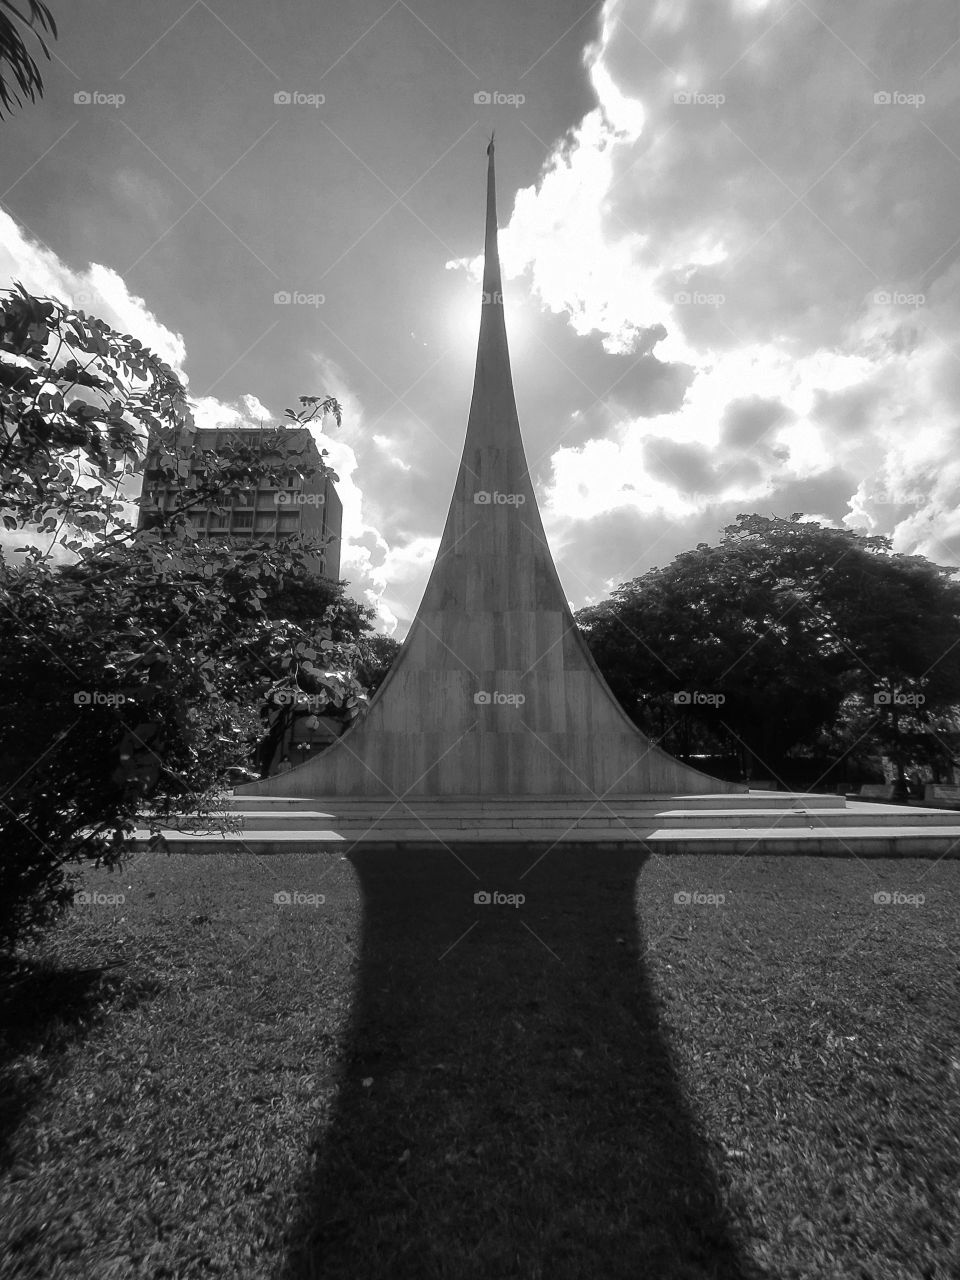 Monumento histórico no centro da cidade no interior de São Paulo.